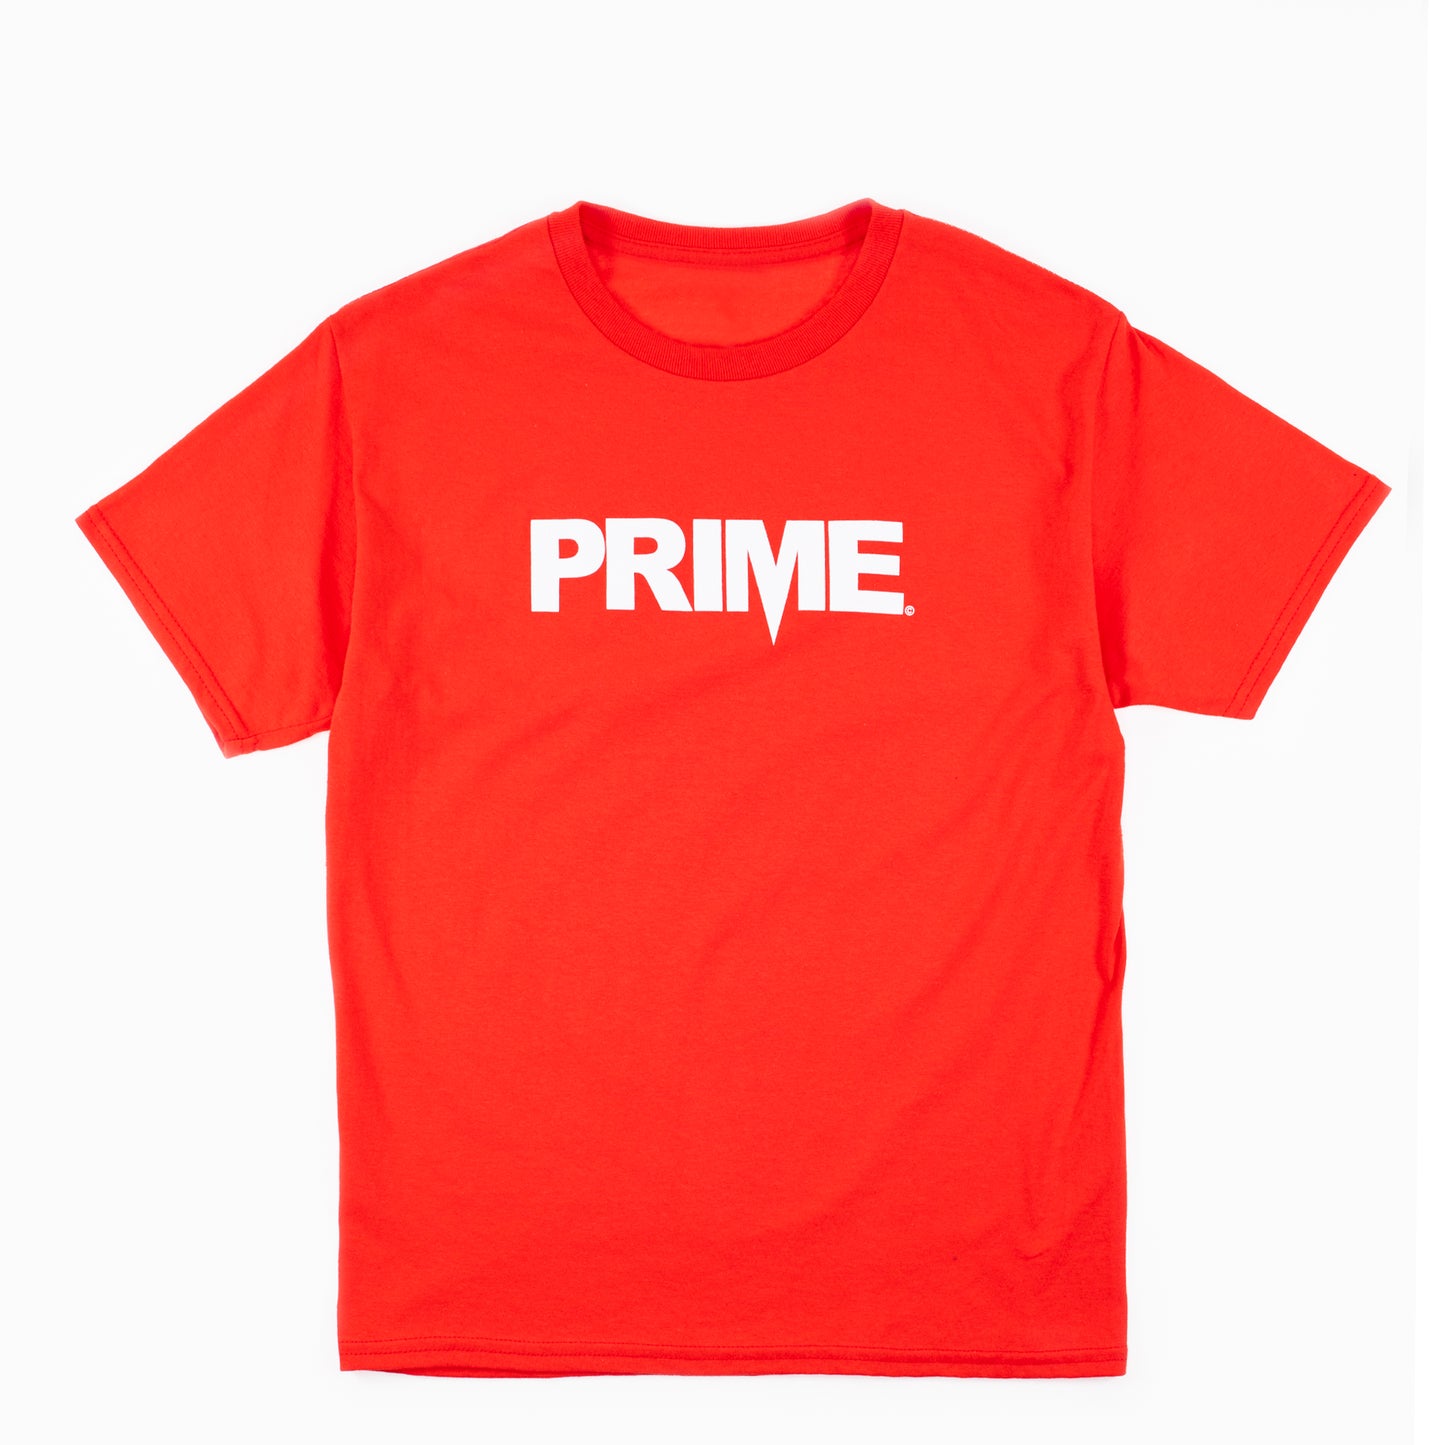 Prime Delux OG Logo Kids T Shirt - Red / White - Prime Delux Store